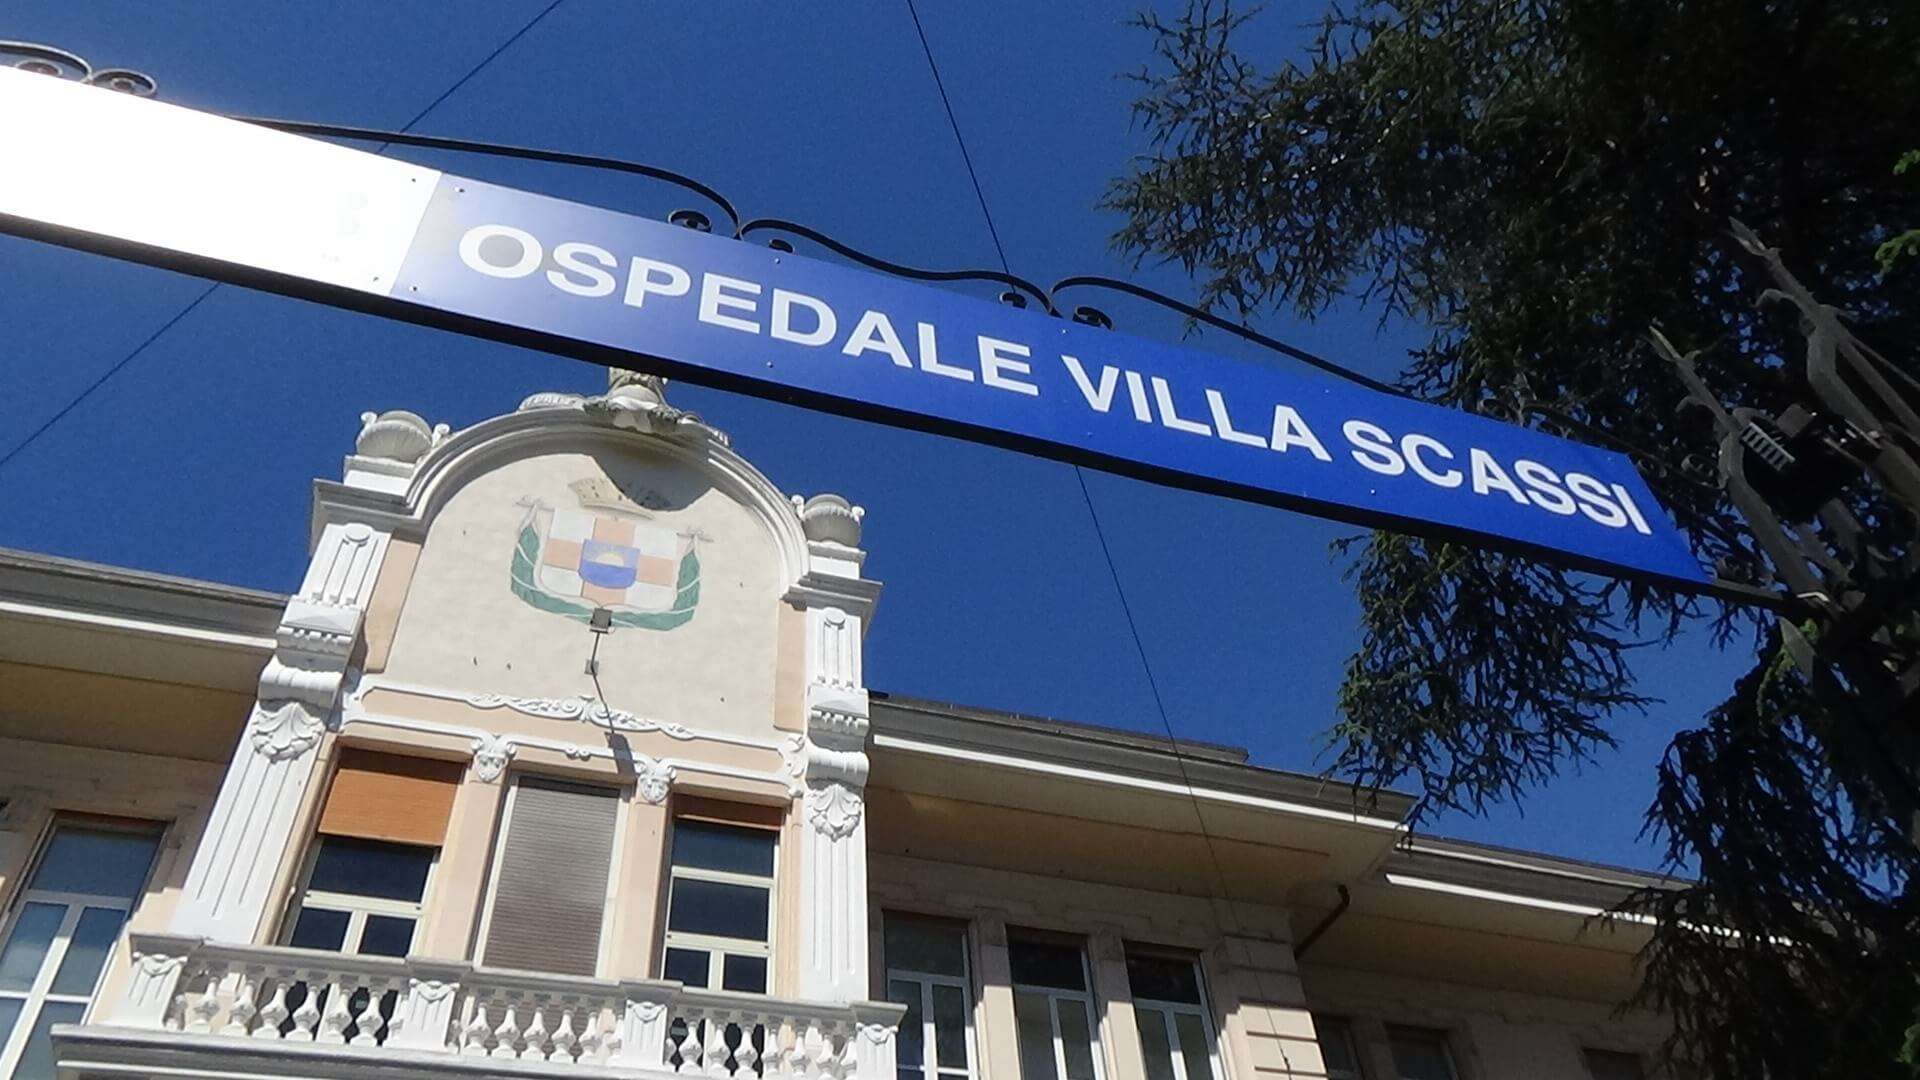 Genova, dottoressa aggredita all'ospedale Villa Scassi da una paziente appena dimessa